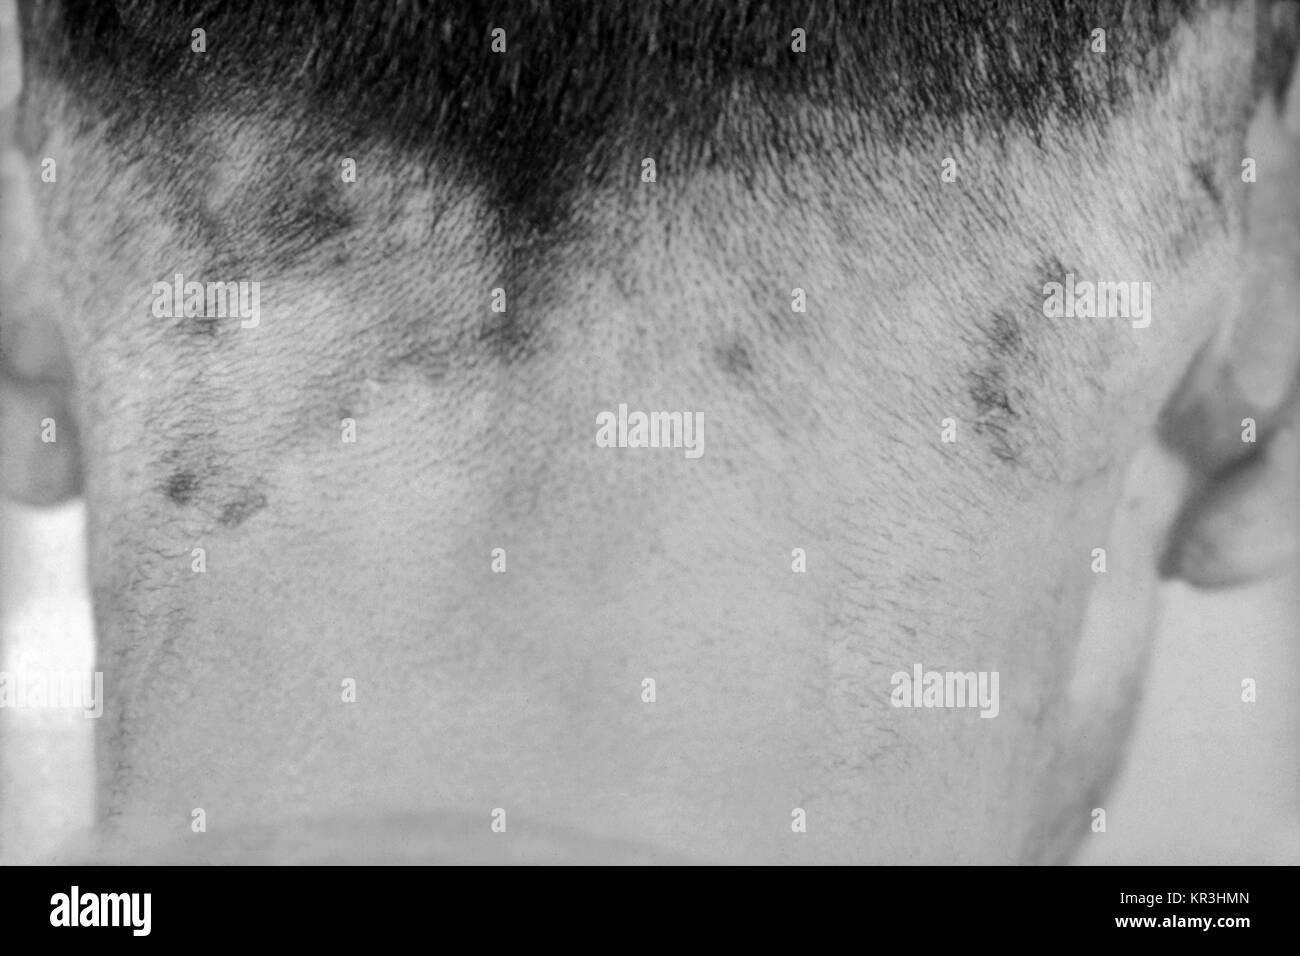 Ein Foto von einem Patienten mit tertiäre Syphilis, die in gummas hier auf der Kopfhaut zu sehen. Tertiäre Syphilis tritt auf, viele Jahre nach der unbehandelten primären Syphilis, 1971. Gummas oder innere Gewebe Granulation, Form und zu schweren Schäden an der Haut, Knochen und Leber. Mit freundlicher CDC/Susan Lindsley. Stockfoto